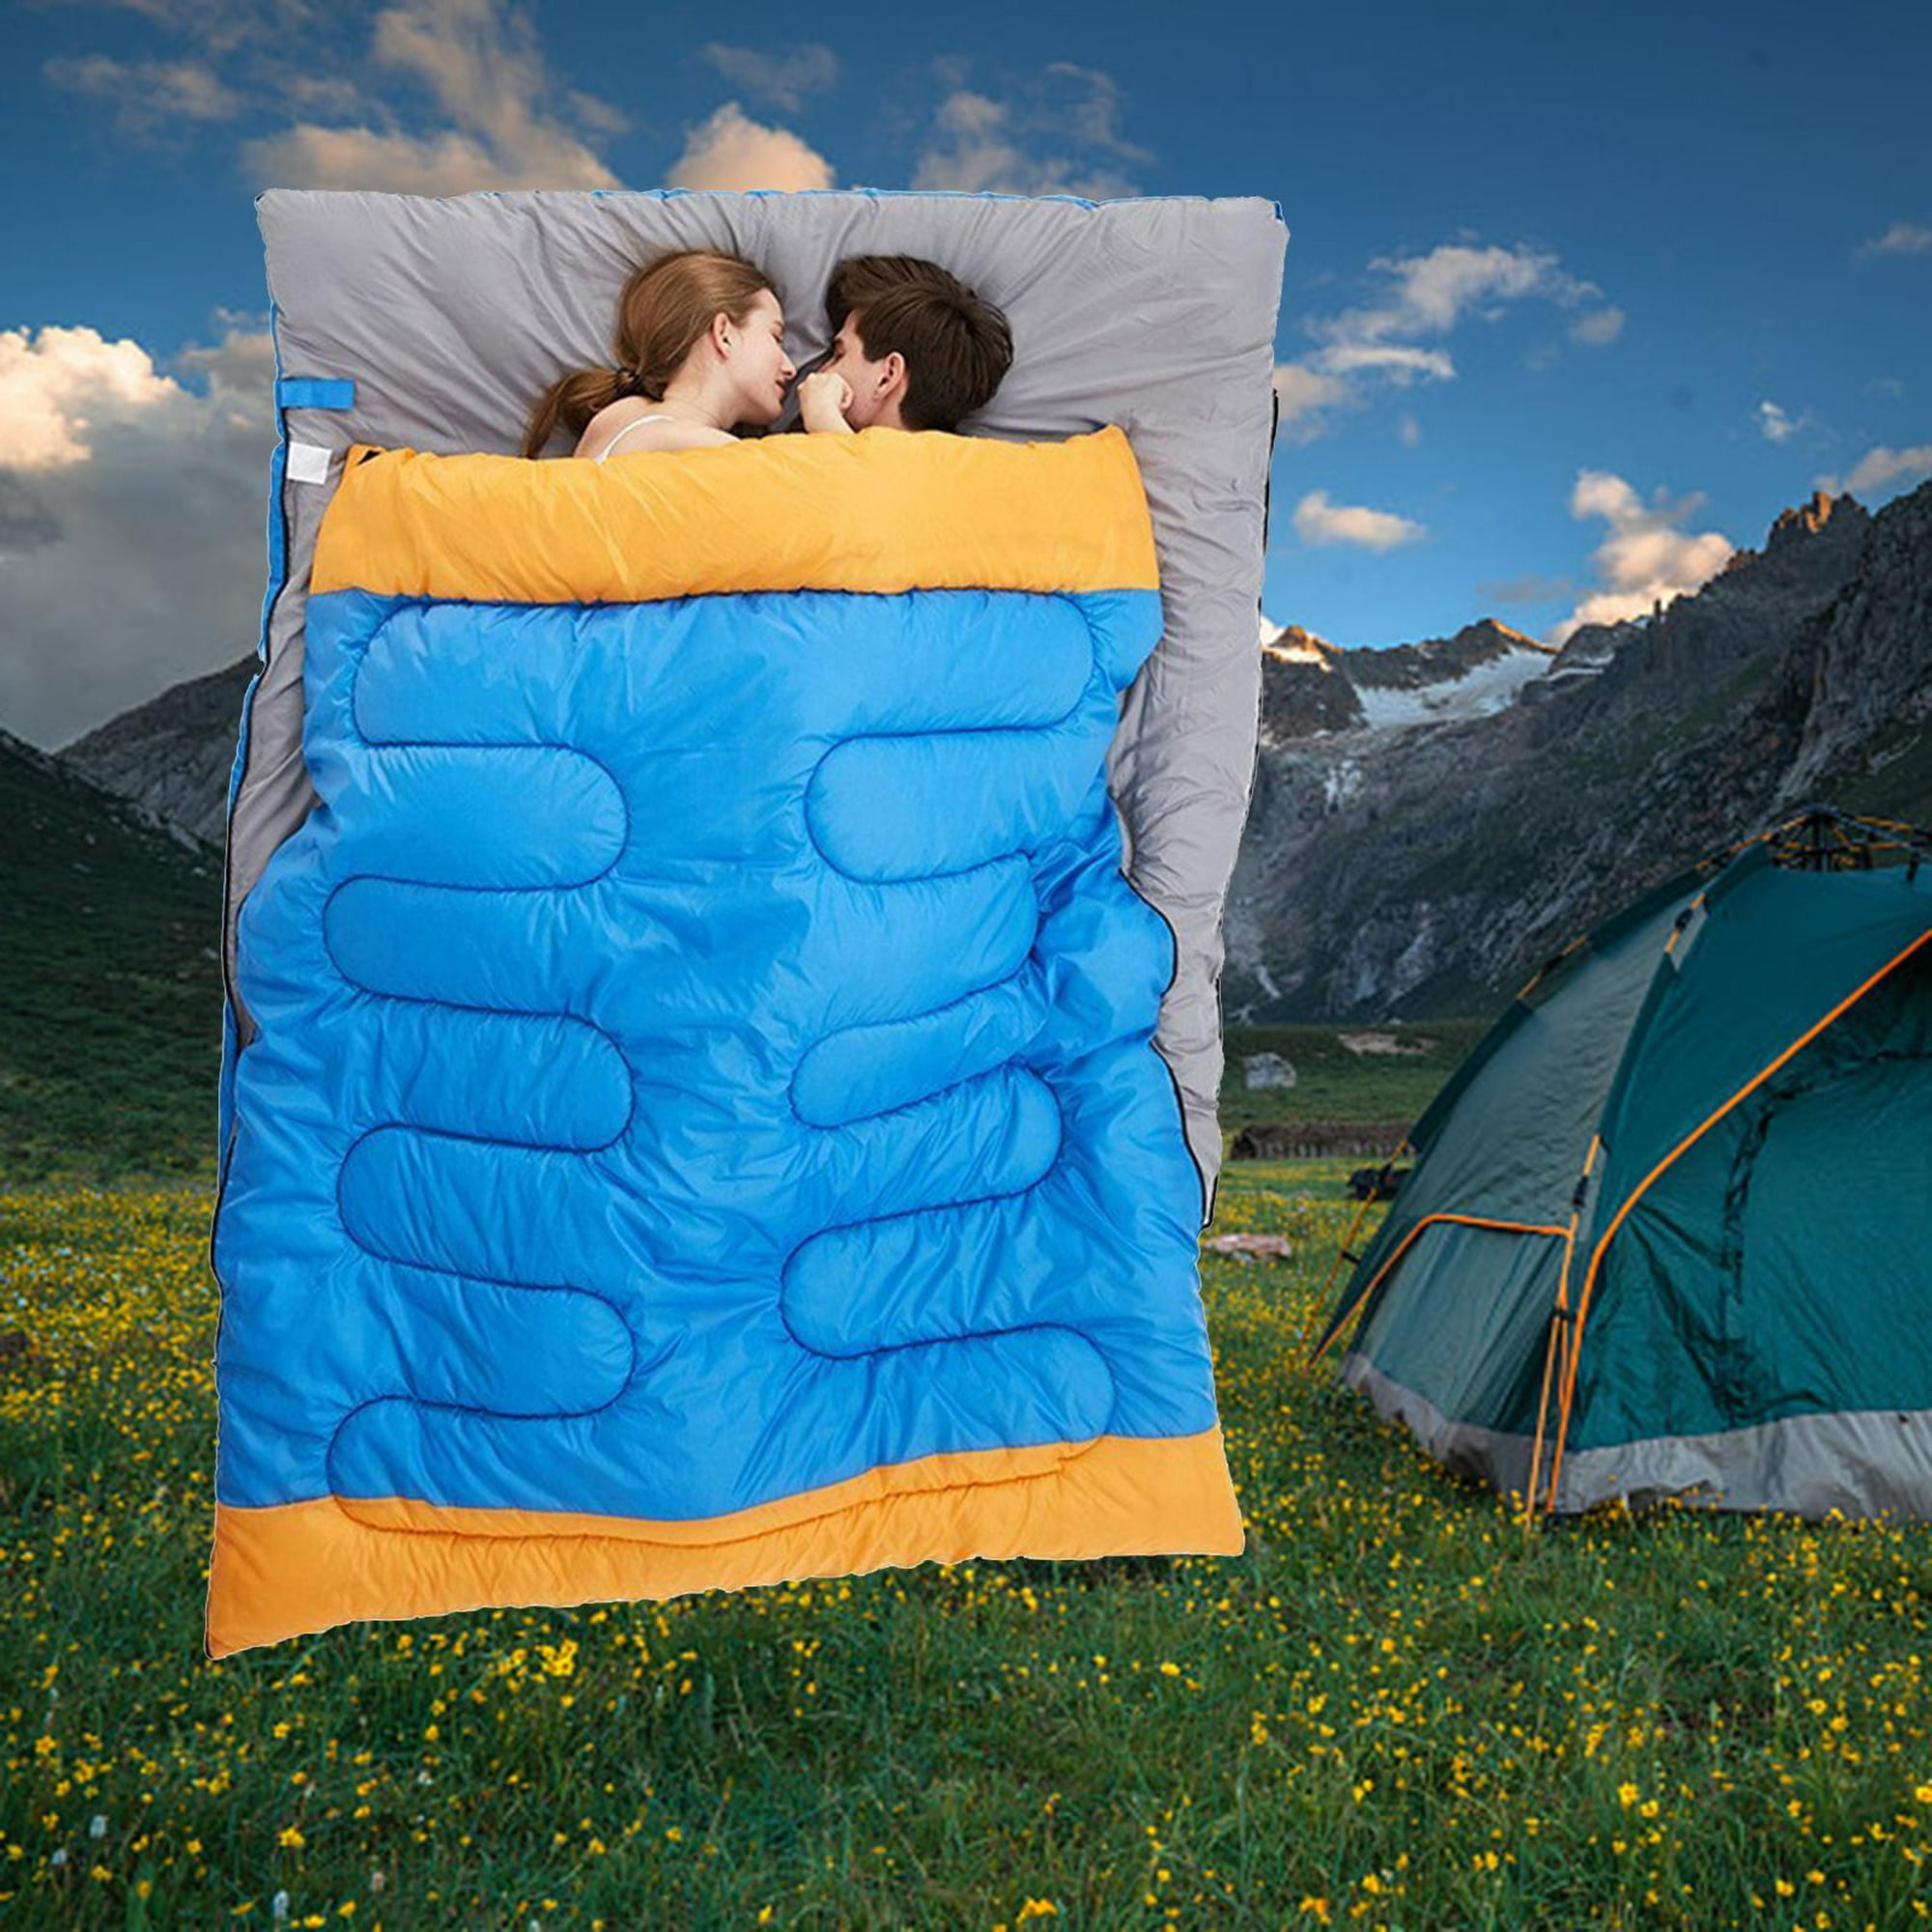 Saco de dormir doble para camping, mochilero o senderismo, tamaño Queen XL,  saco de dormir impermeable para 2 personas para adultos, adolescentes o